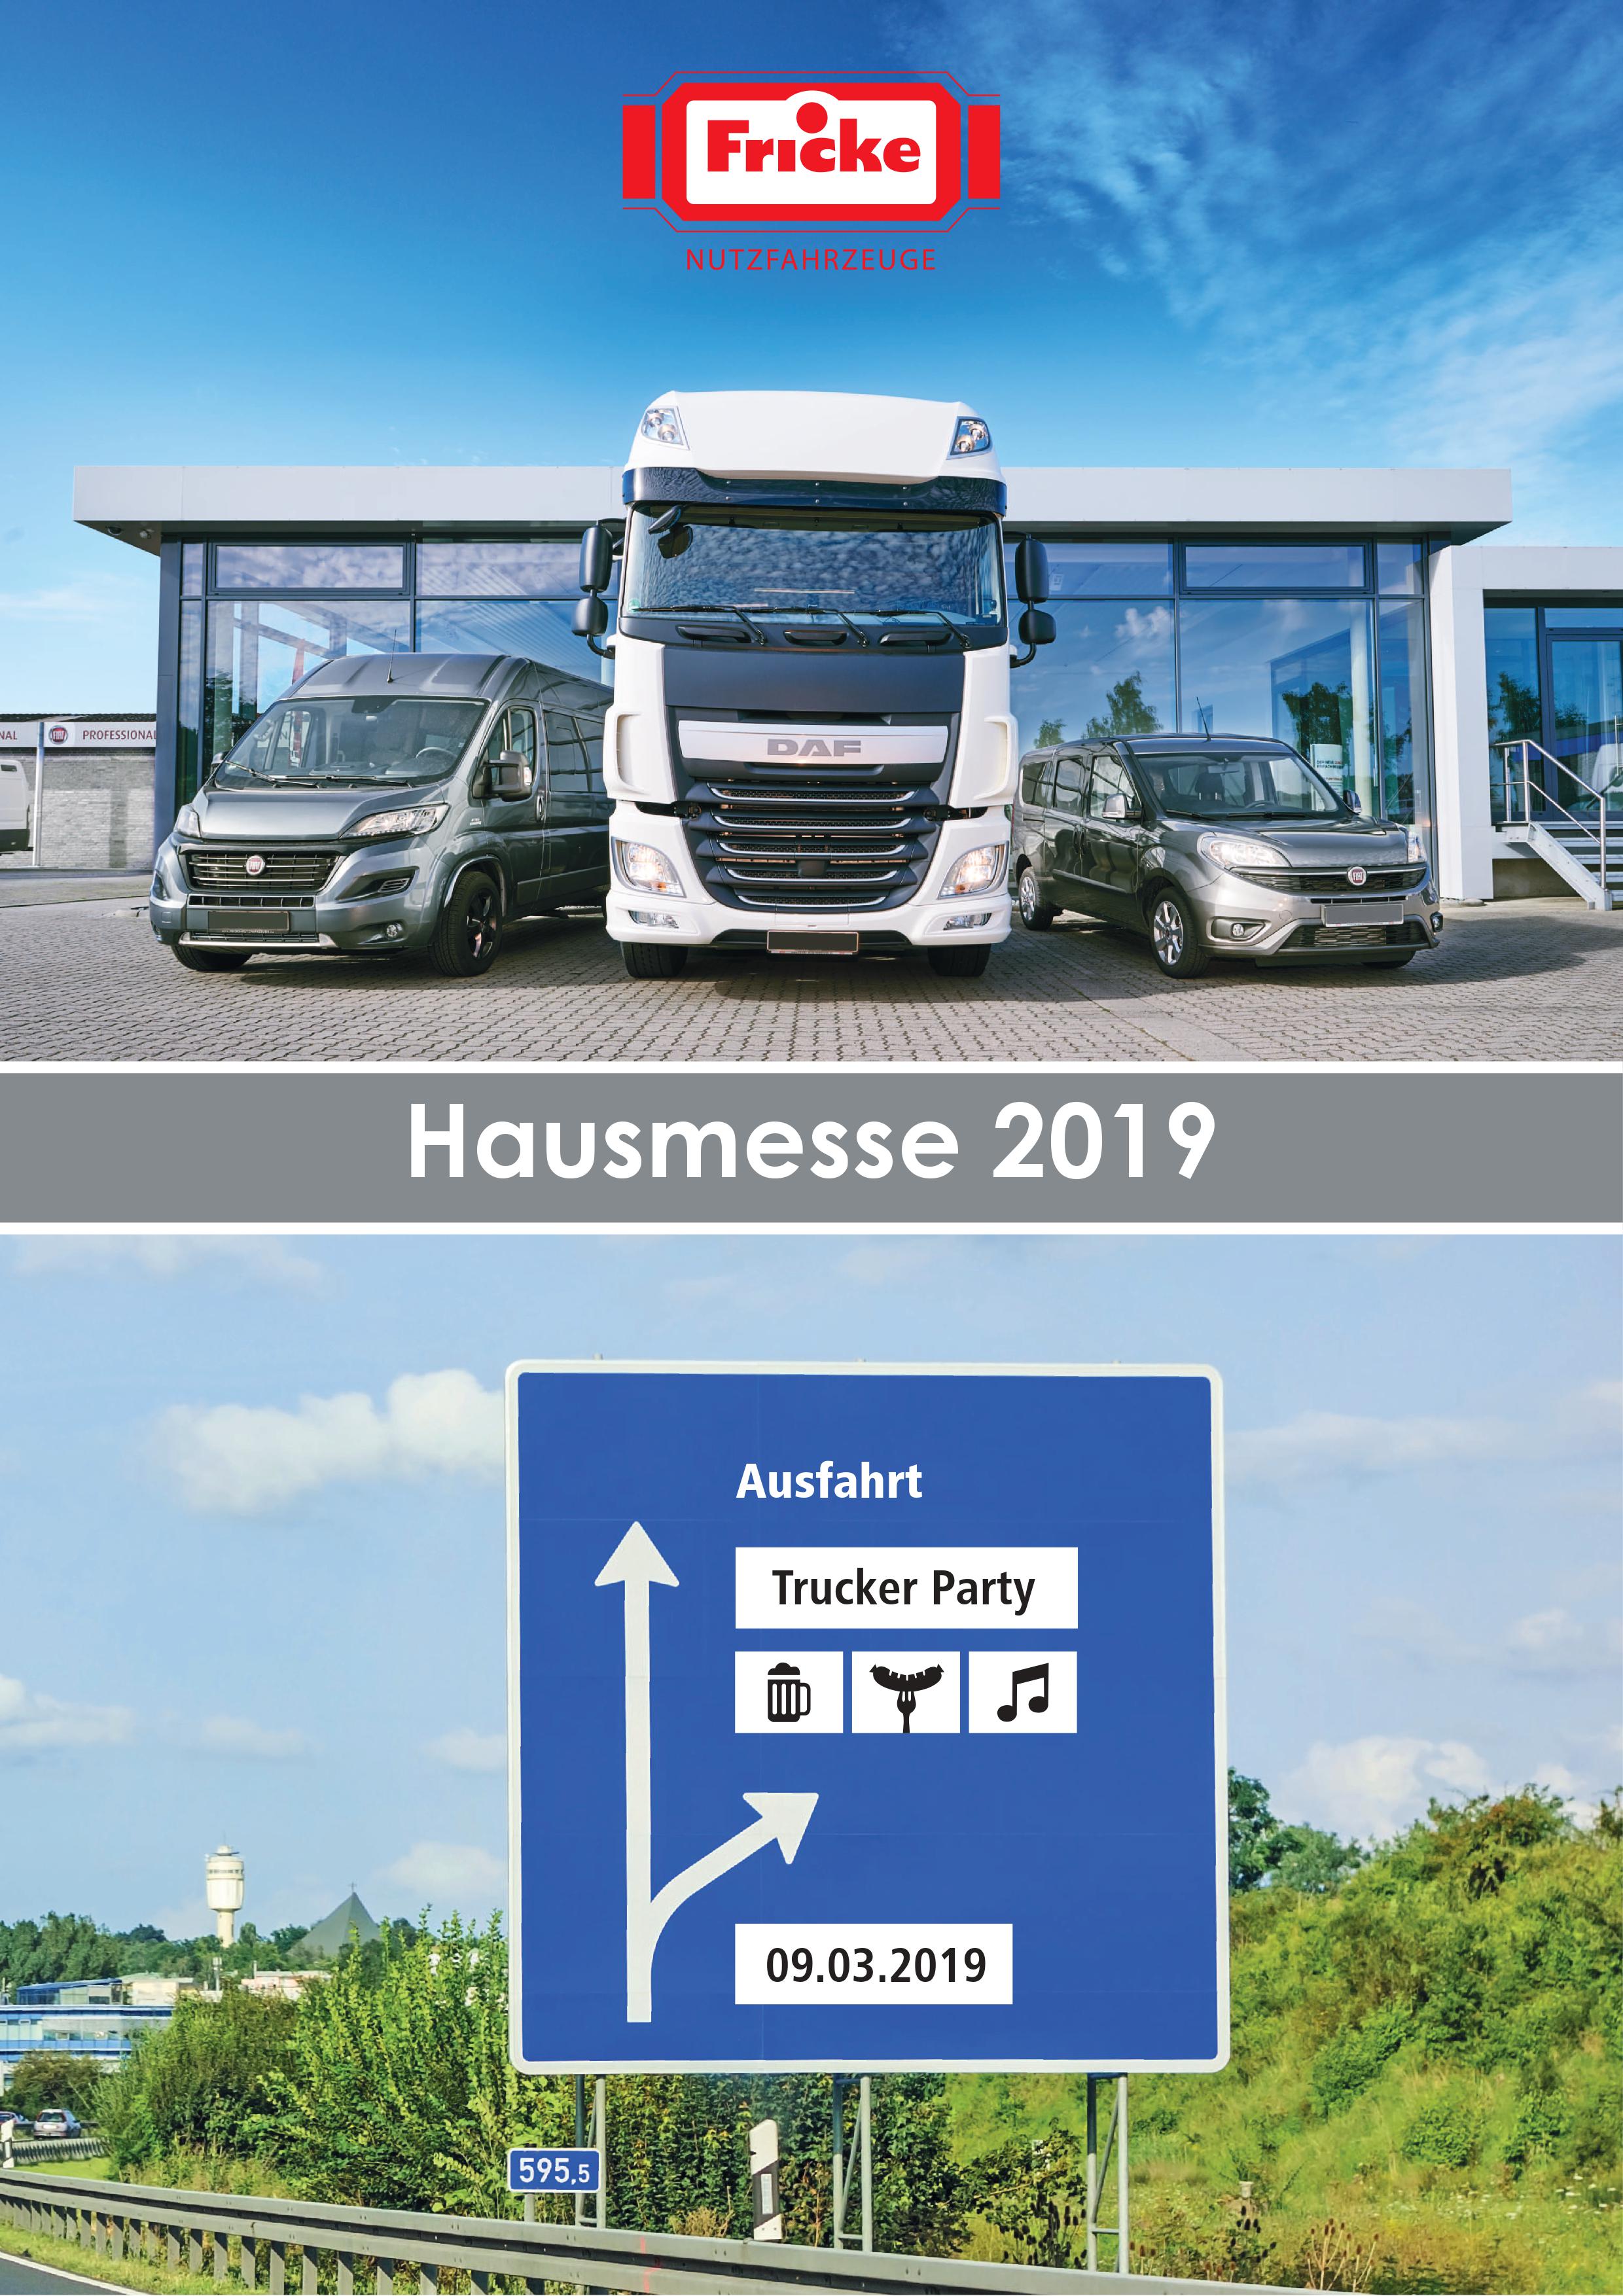 Hausmesse zur Heeslinger Landmaschinenschau 09./10.03.2019